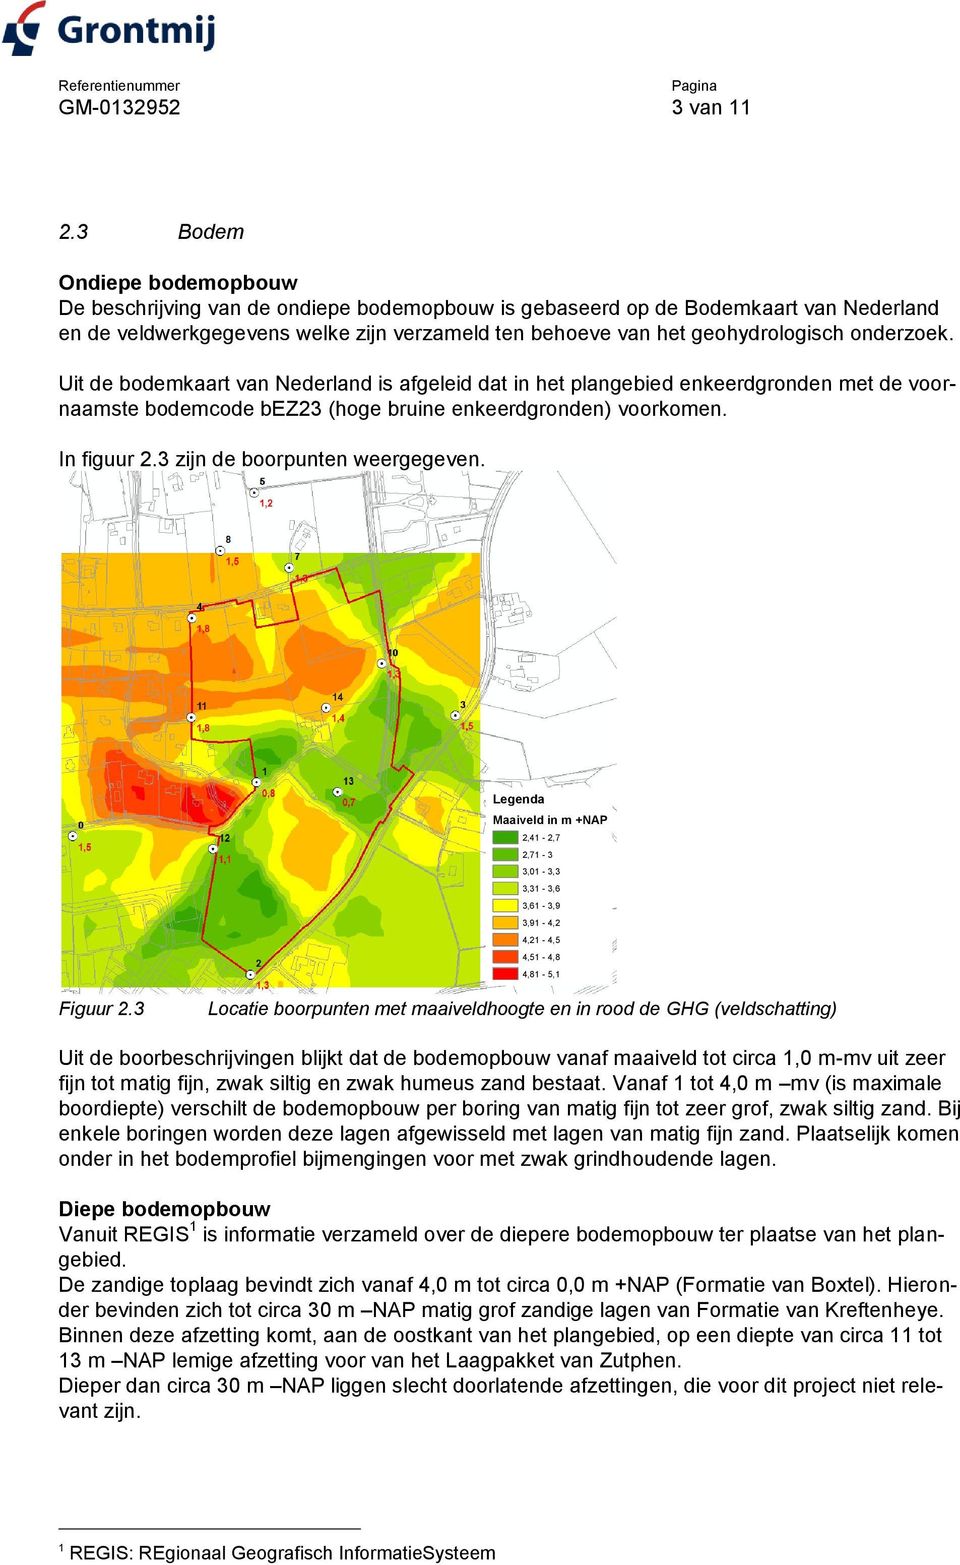 onderzoek. Uit de bodemkaart van Nederland is afgeleid dat in het plangebied enkeerdgronden met de voornaamste bodemcode bez23 (hoge bruine enkeerdgronden) voorkomen. In figuur 2.